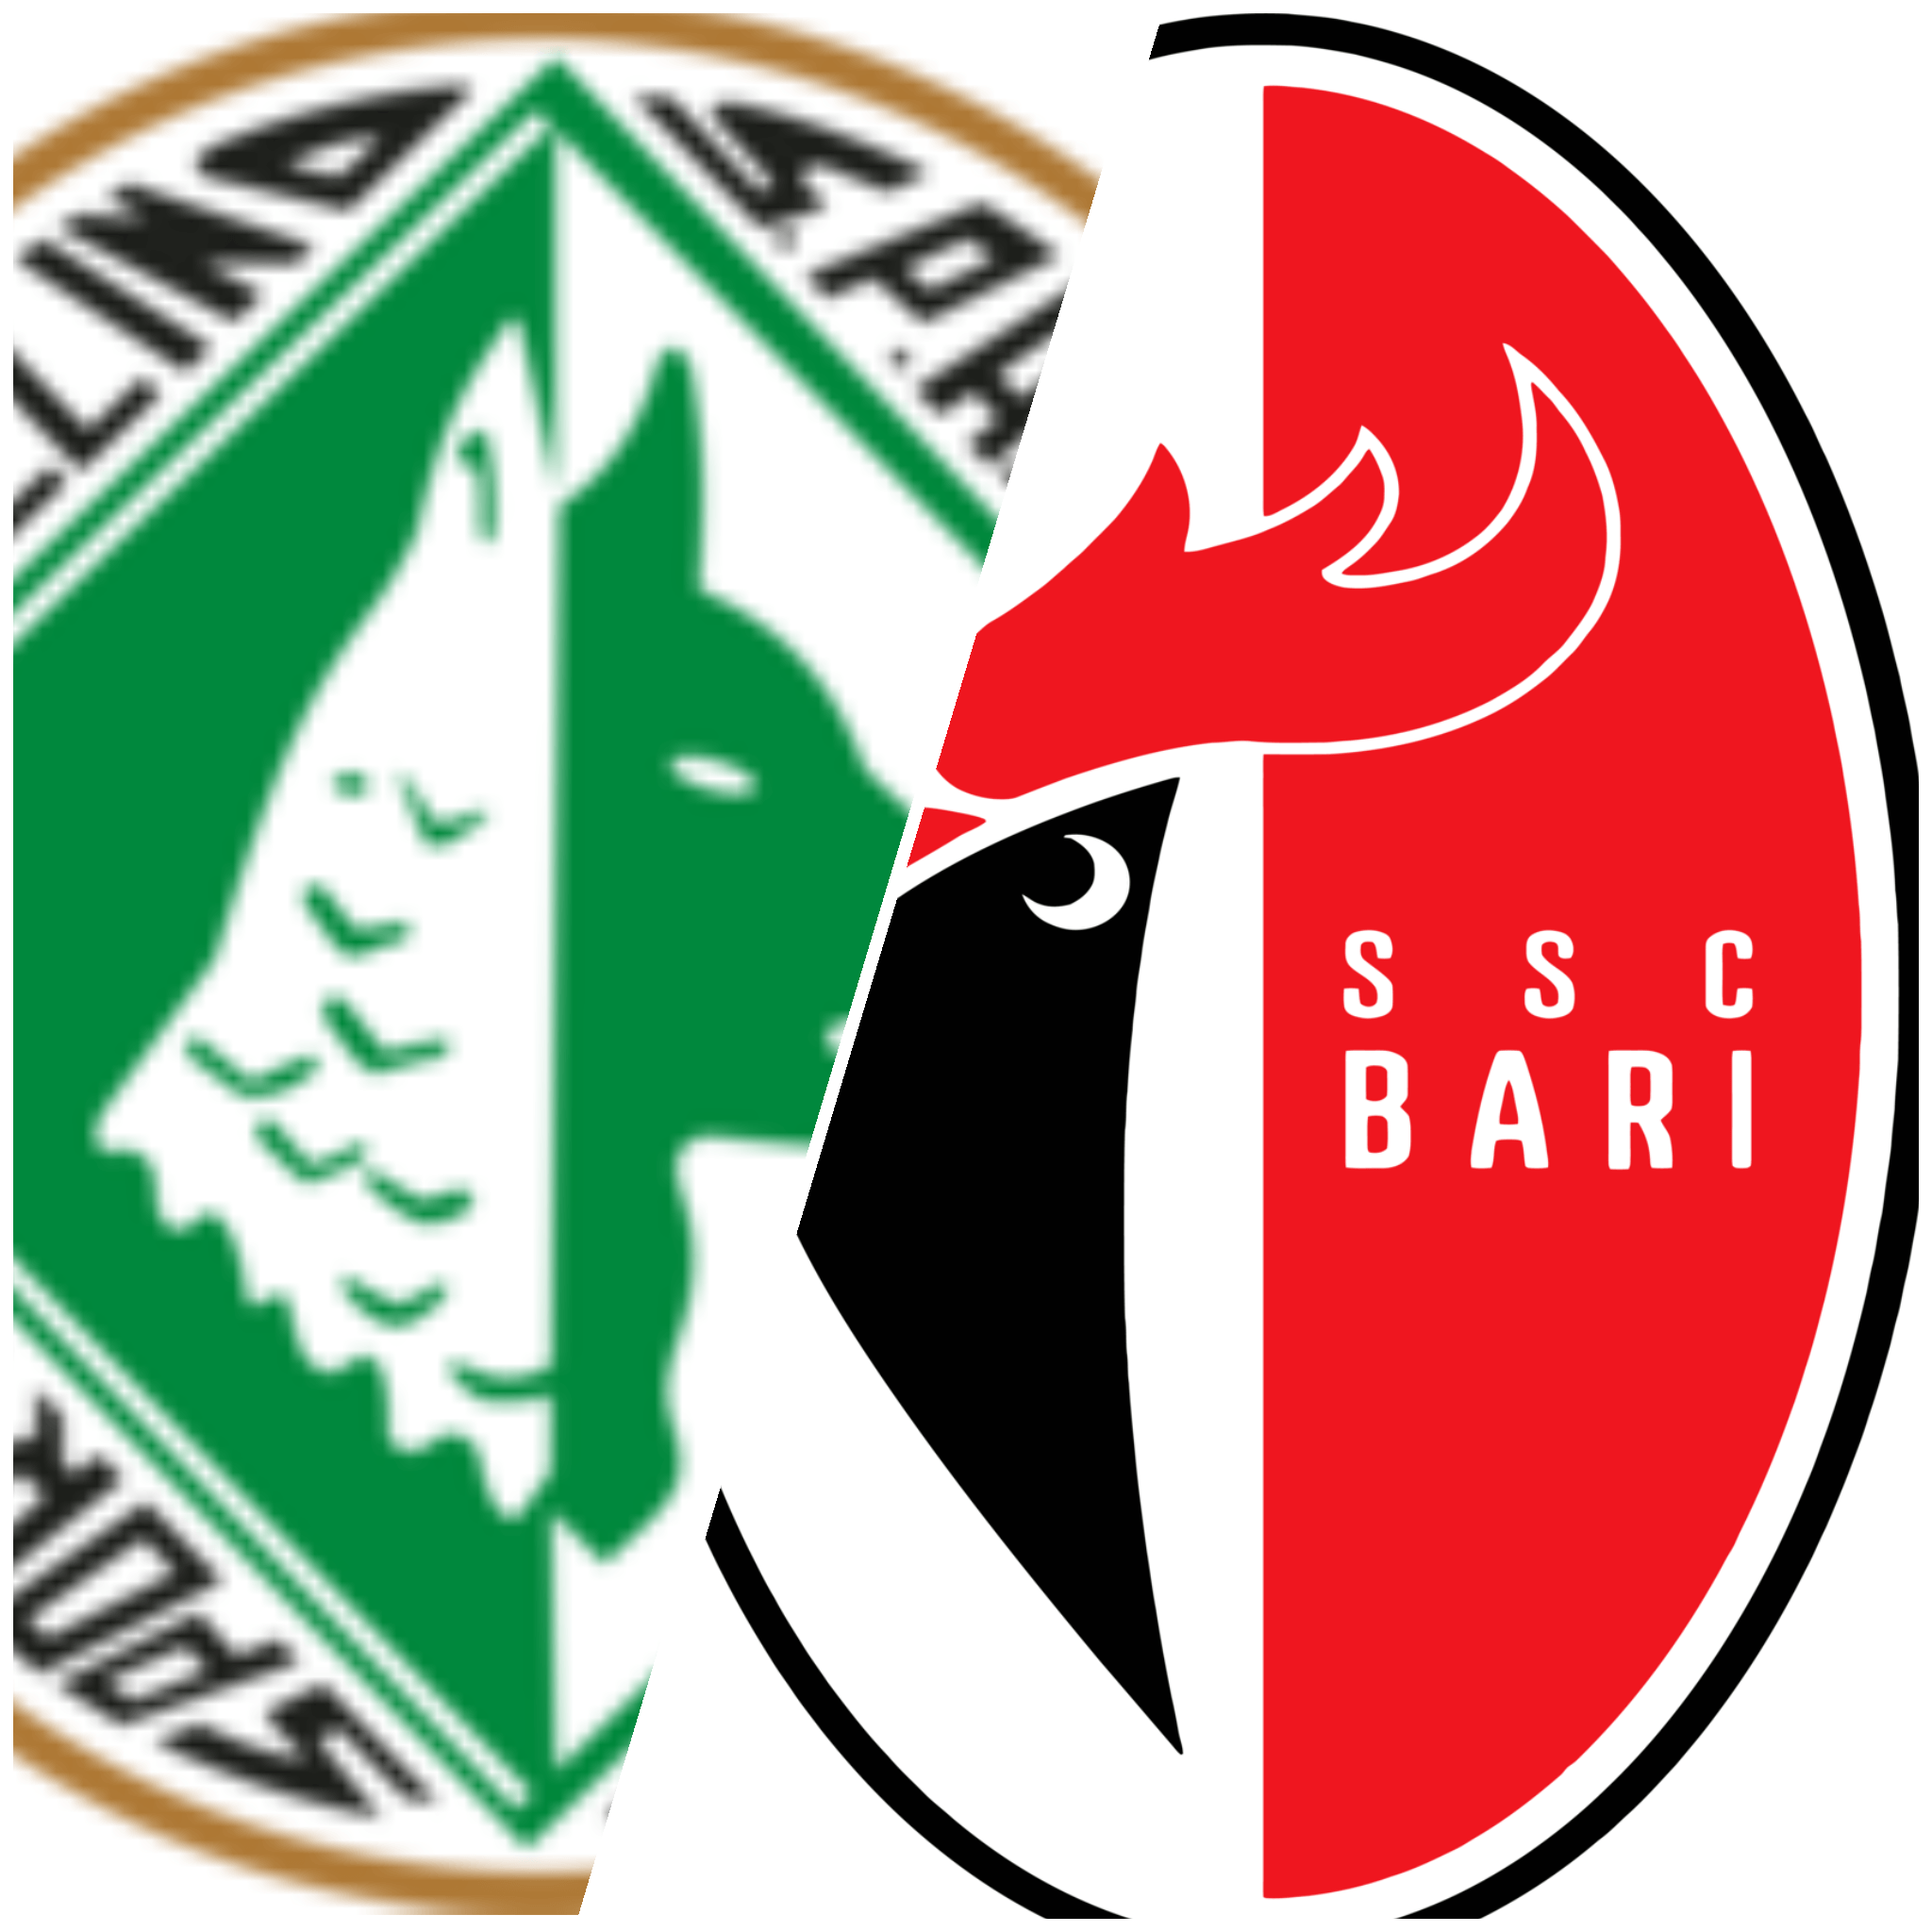 L’ Avellino batte il Bari: agli irpini il big match di Coppa Italia